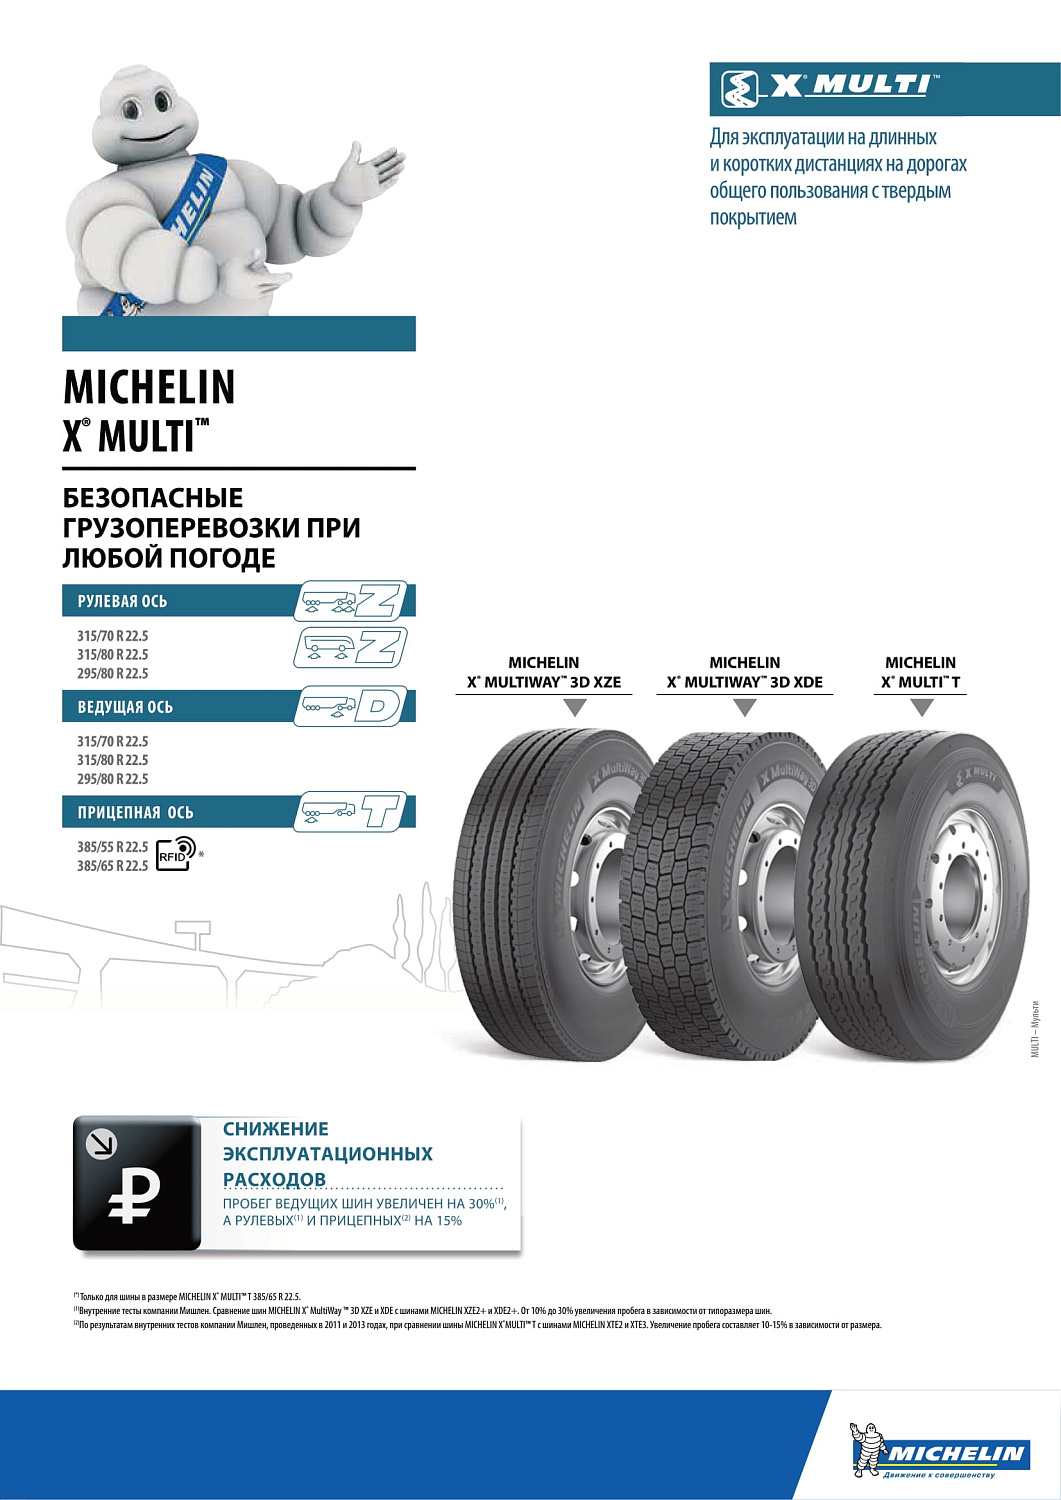 Michelin X Multiway 3D XZE 295/80 R22.5